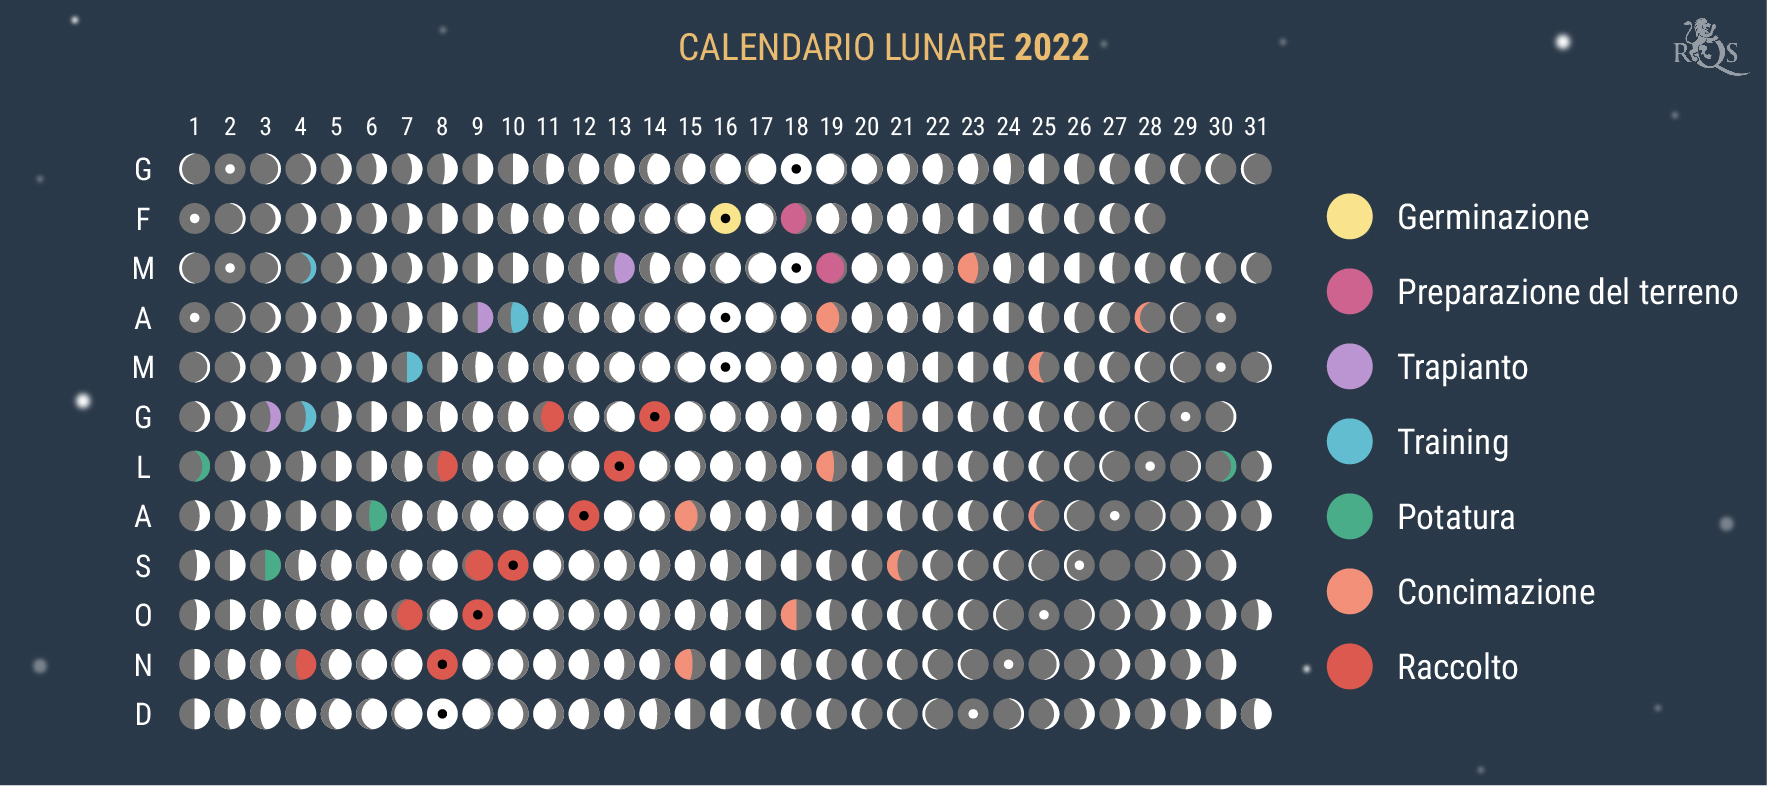 Come Utilizzare il Calendario Lunare 2022 Durante la Stagione di Coltivazione